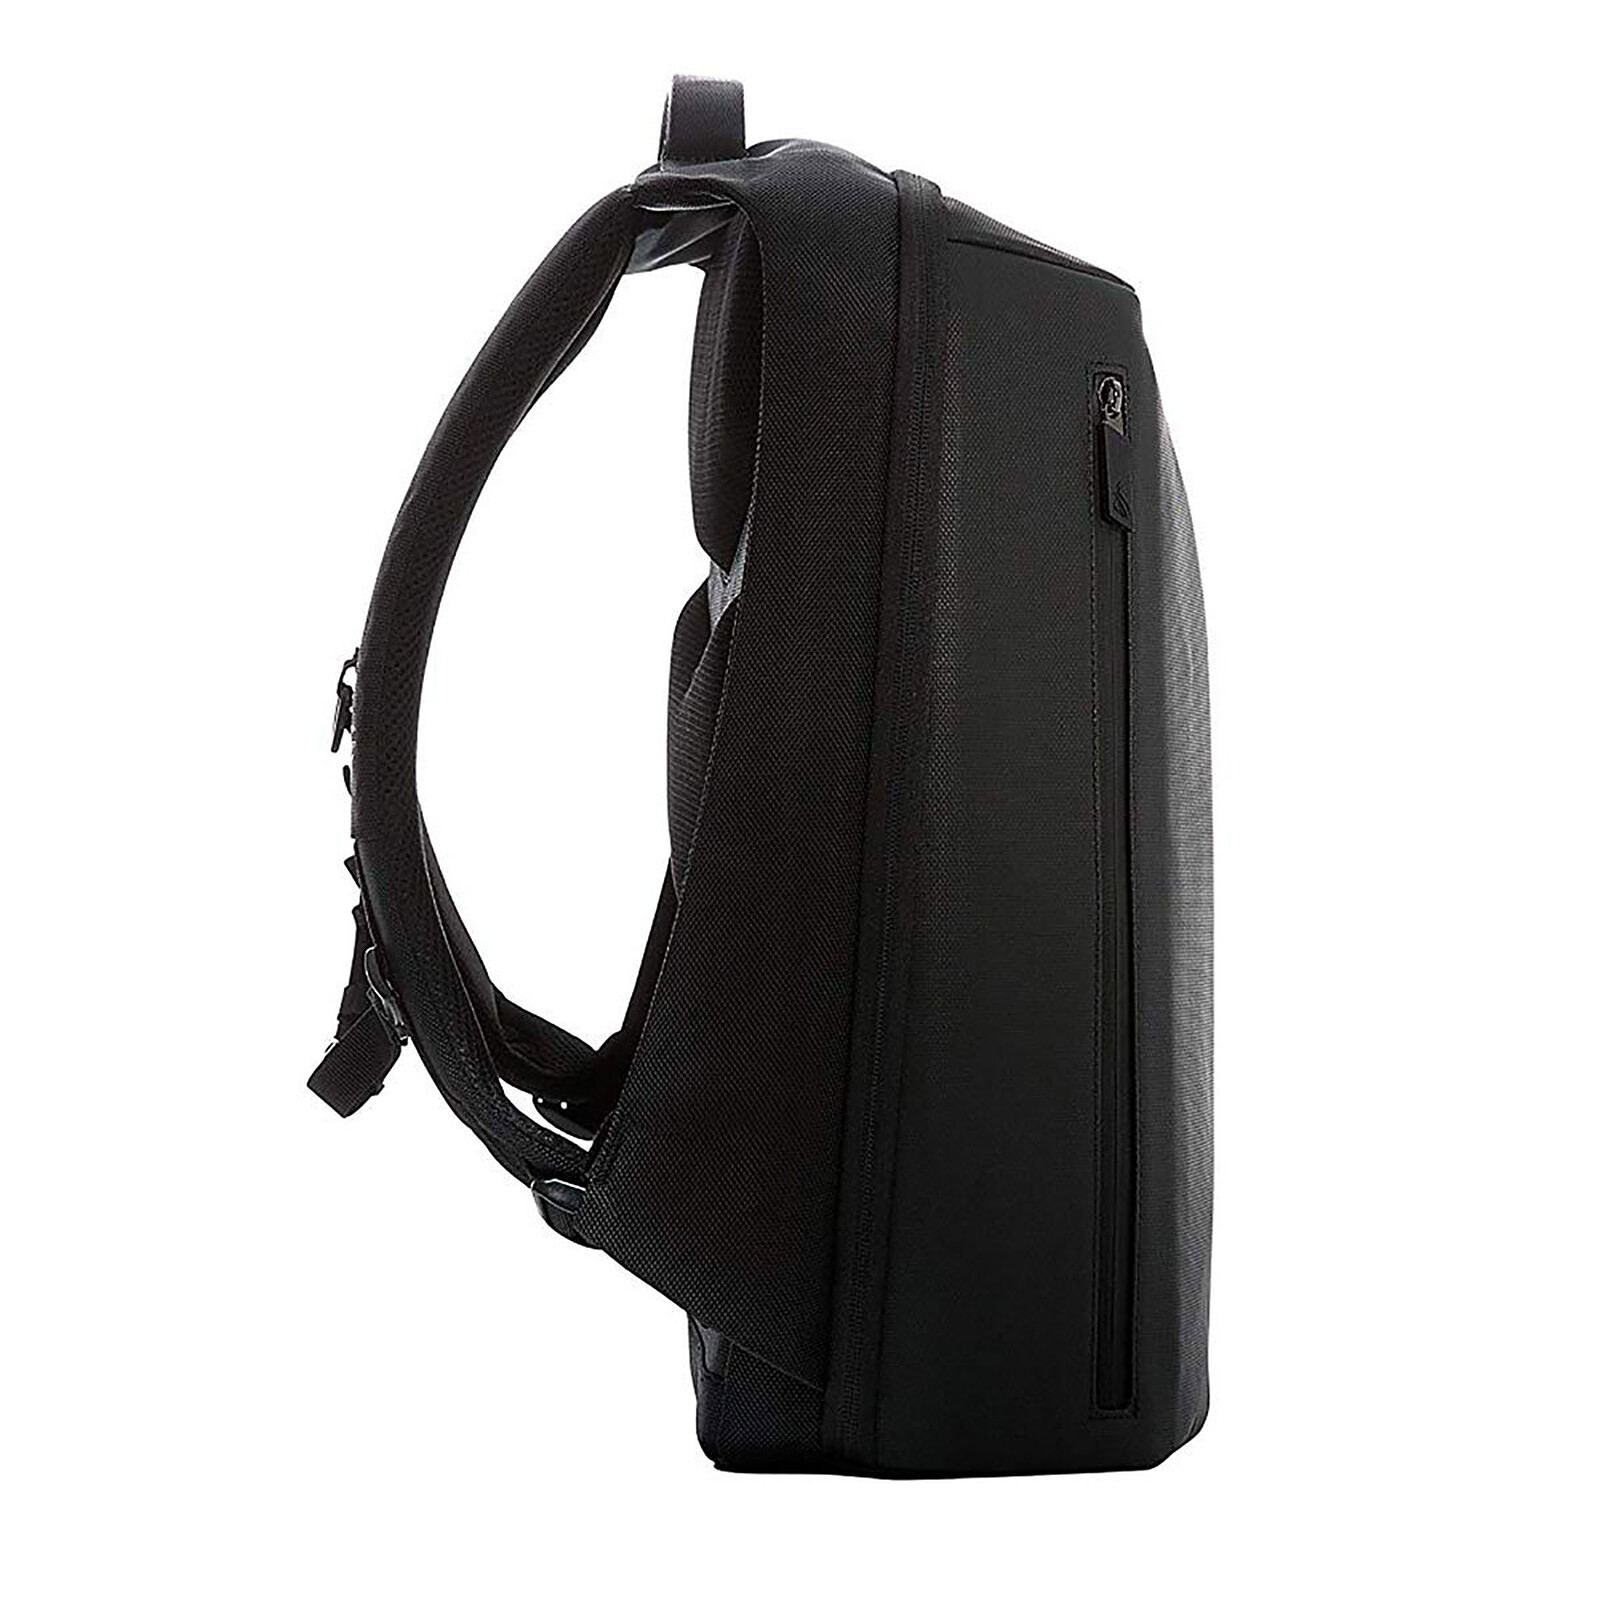 ASUS ROG Ranger BP2500 Gaming Backpack 15.6 - Bag, backpack, case ...